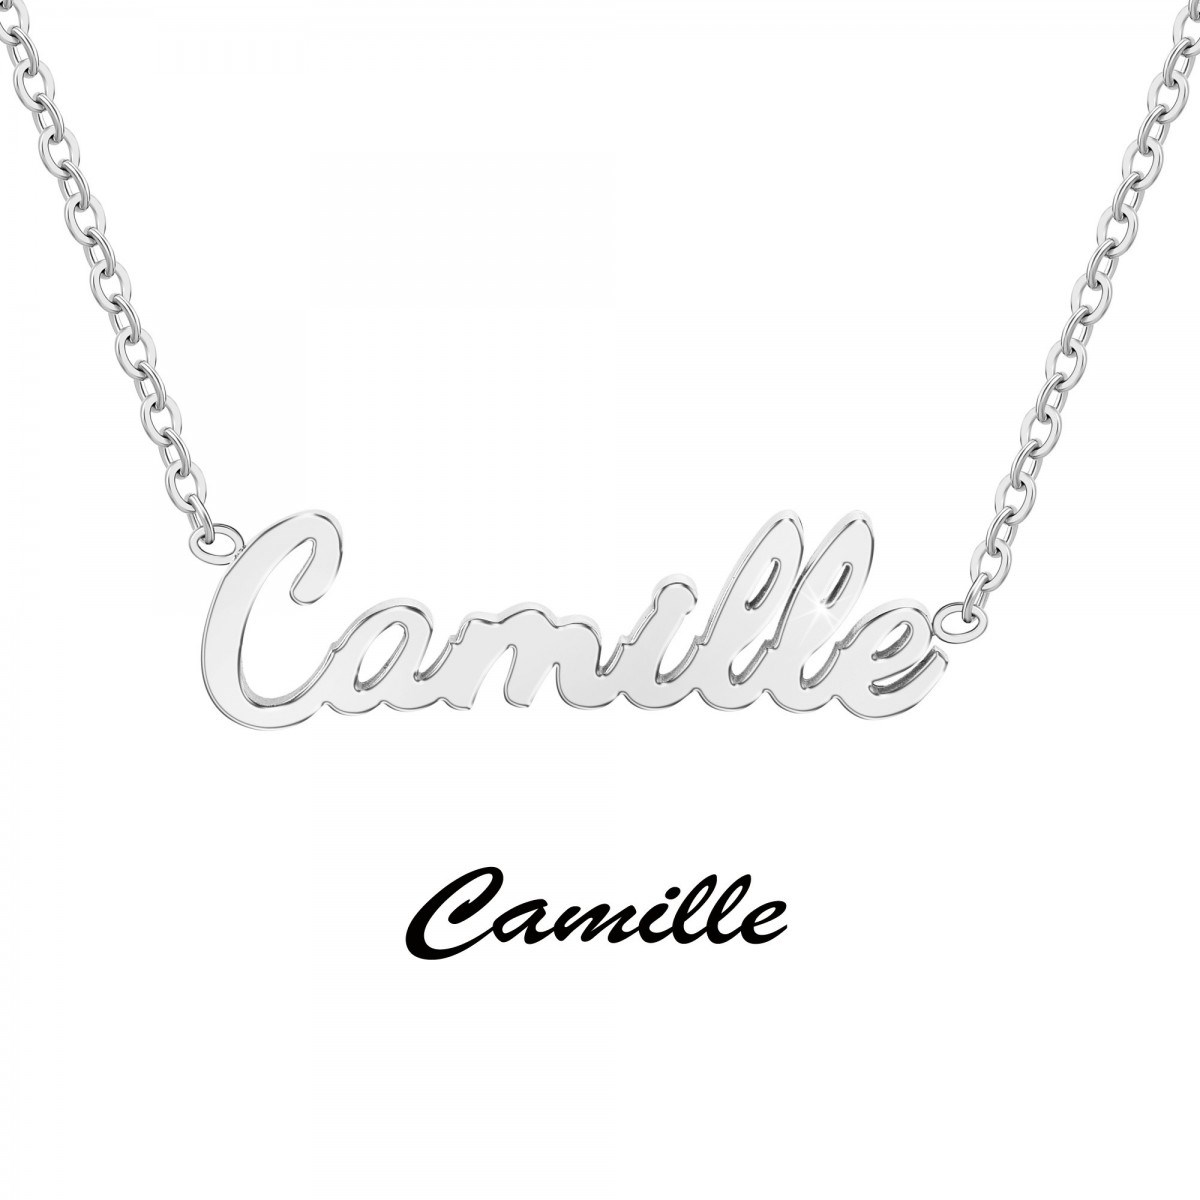 Camille - Collier prénom - vue 3